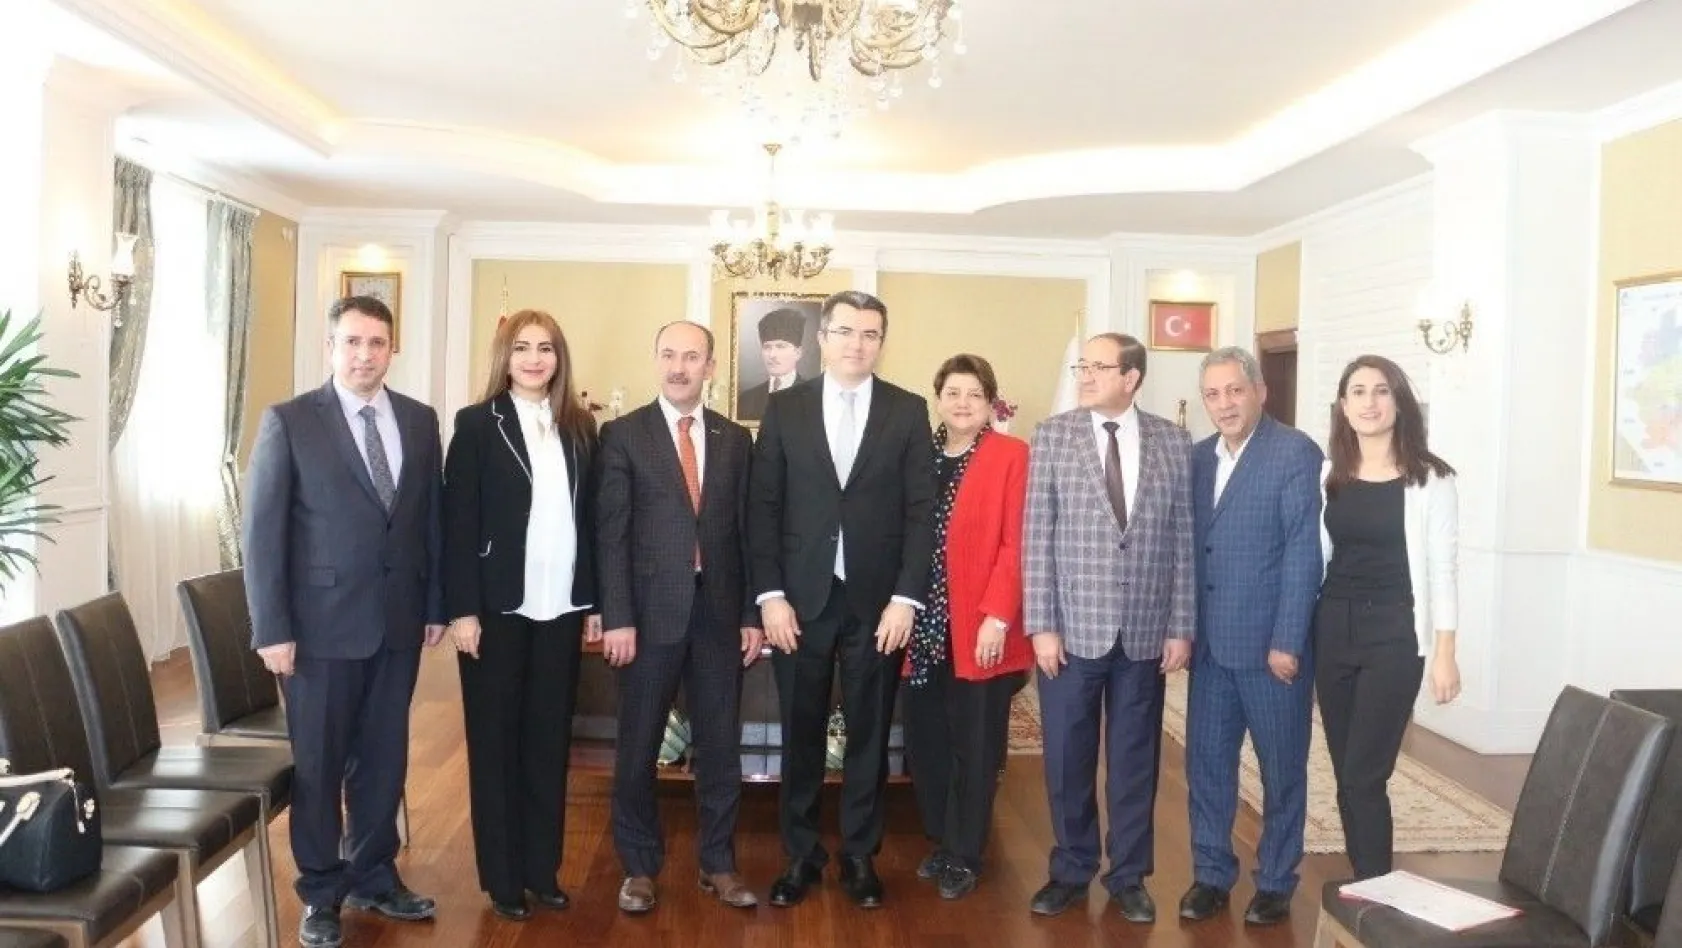 İPEKYOLUSİFED yönetimi Erzurum Valisi Memiş ile görüştü
